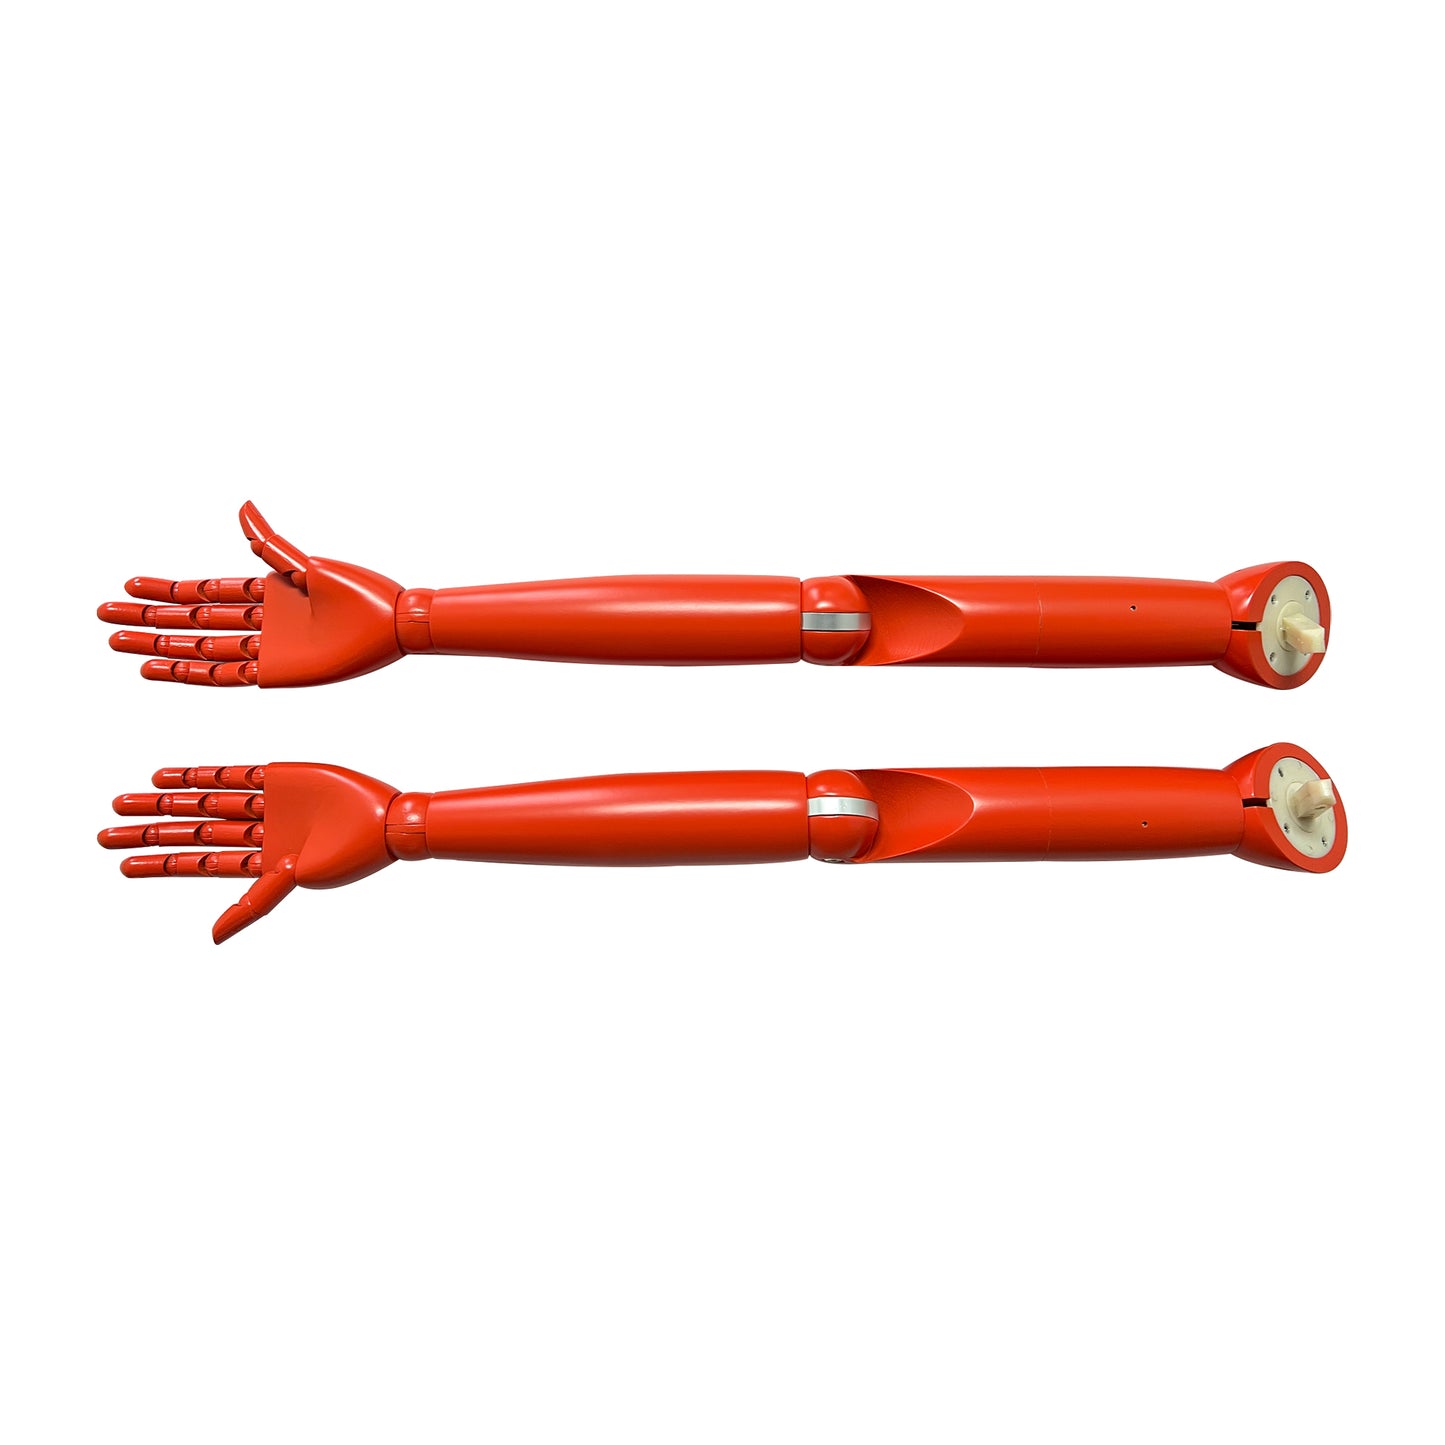 Jelimate Forma mobile di manichino in legno colorato a mano, modello a mano in legno con braccia di manichino femminile, supporto per manichino per esposizione di gioielli